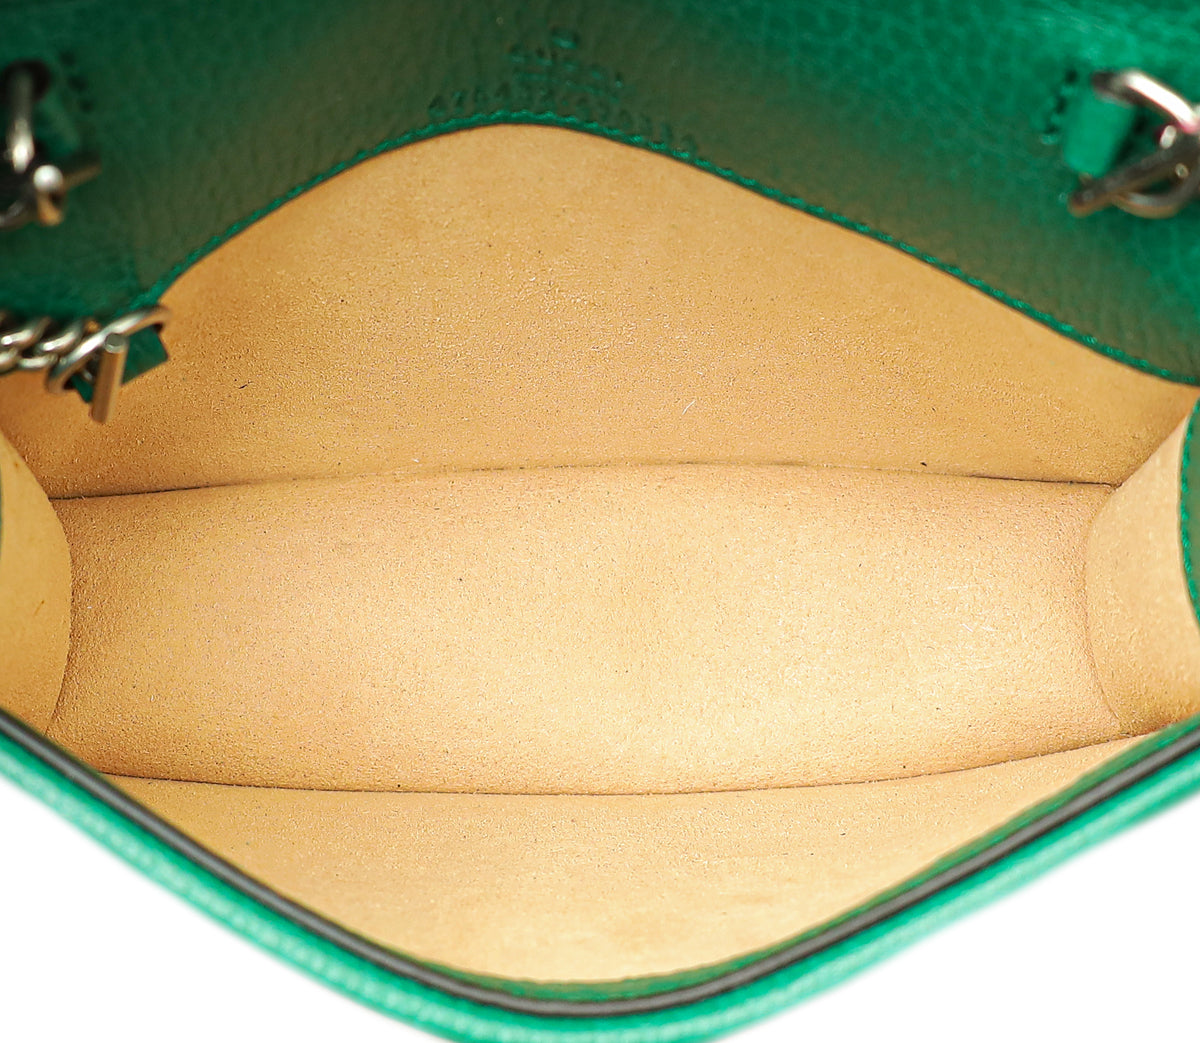 Gucci Green Dionysus Super Mini Bag